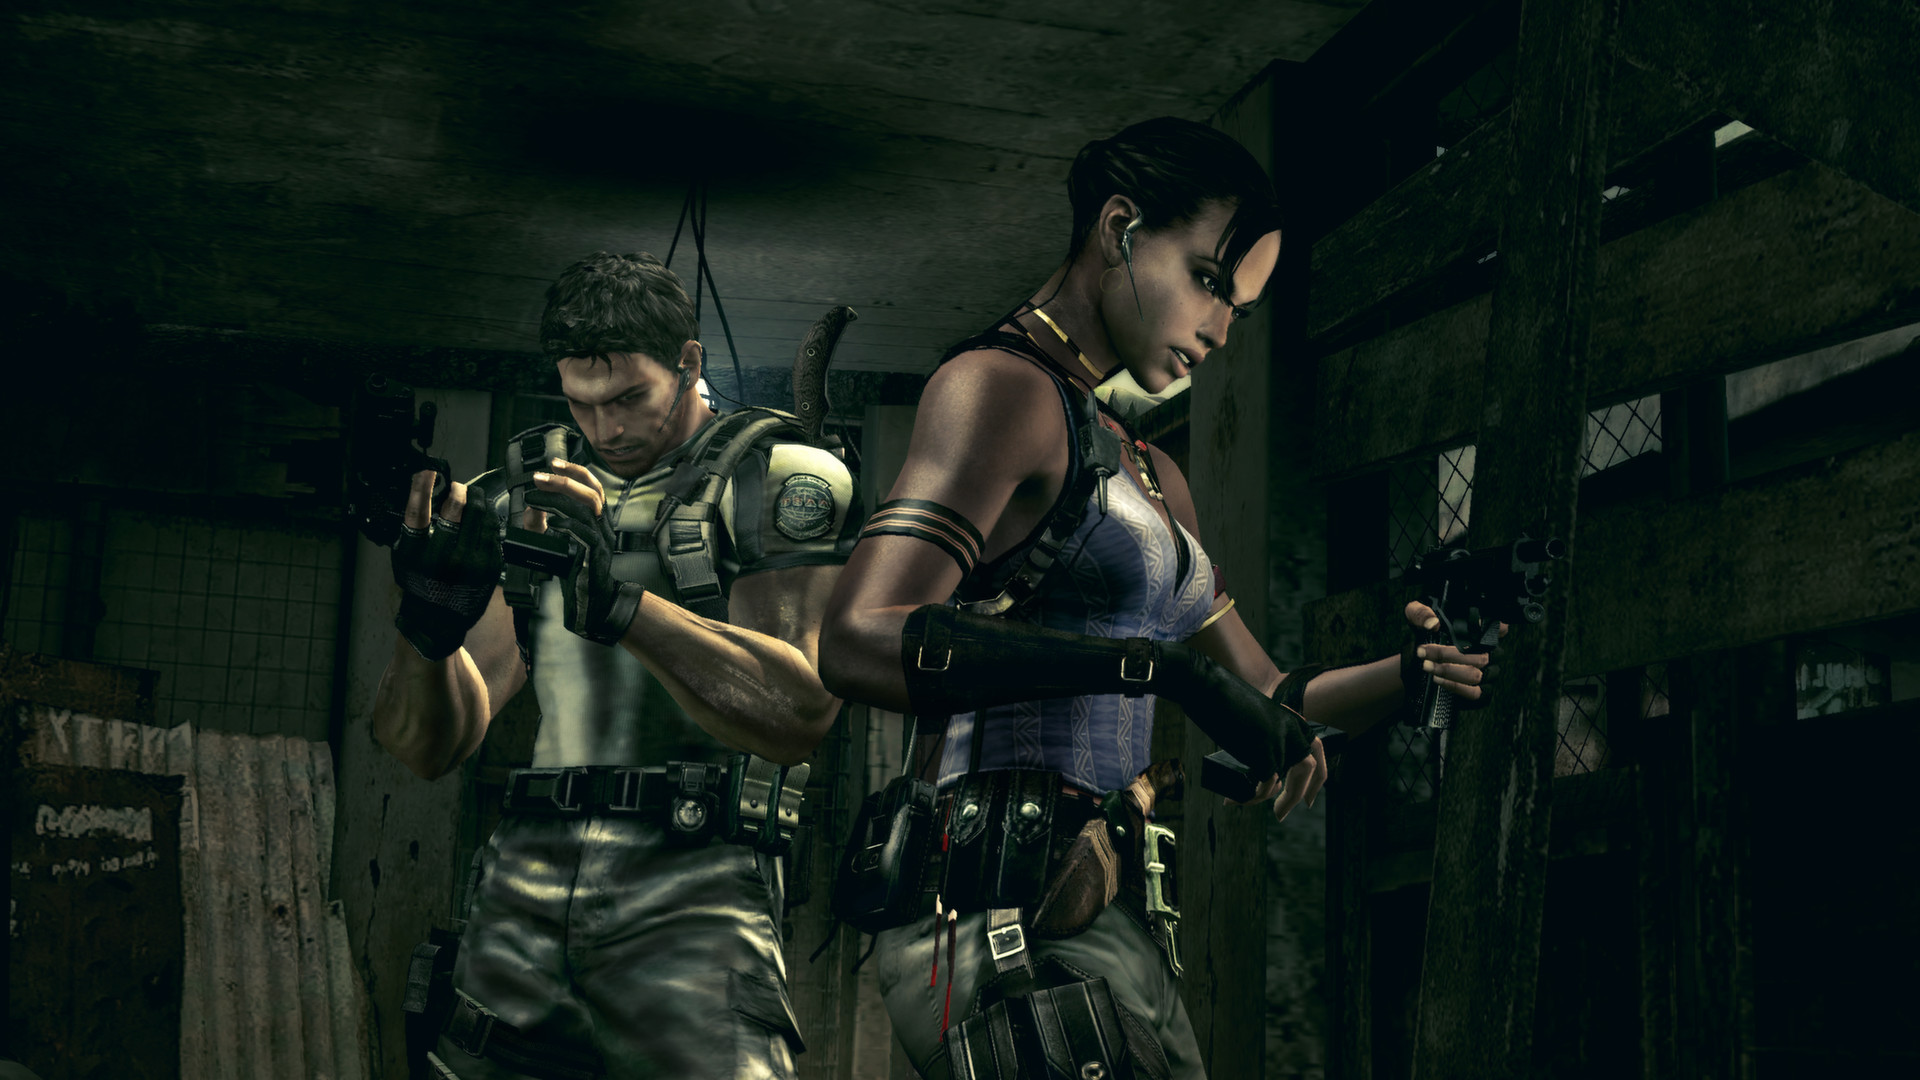 Resident evil 5 descargar utorrent mega totenkirchl nordwand torrent